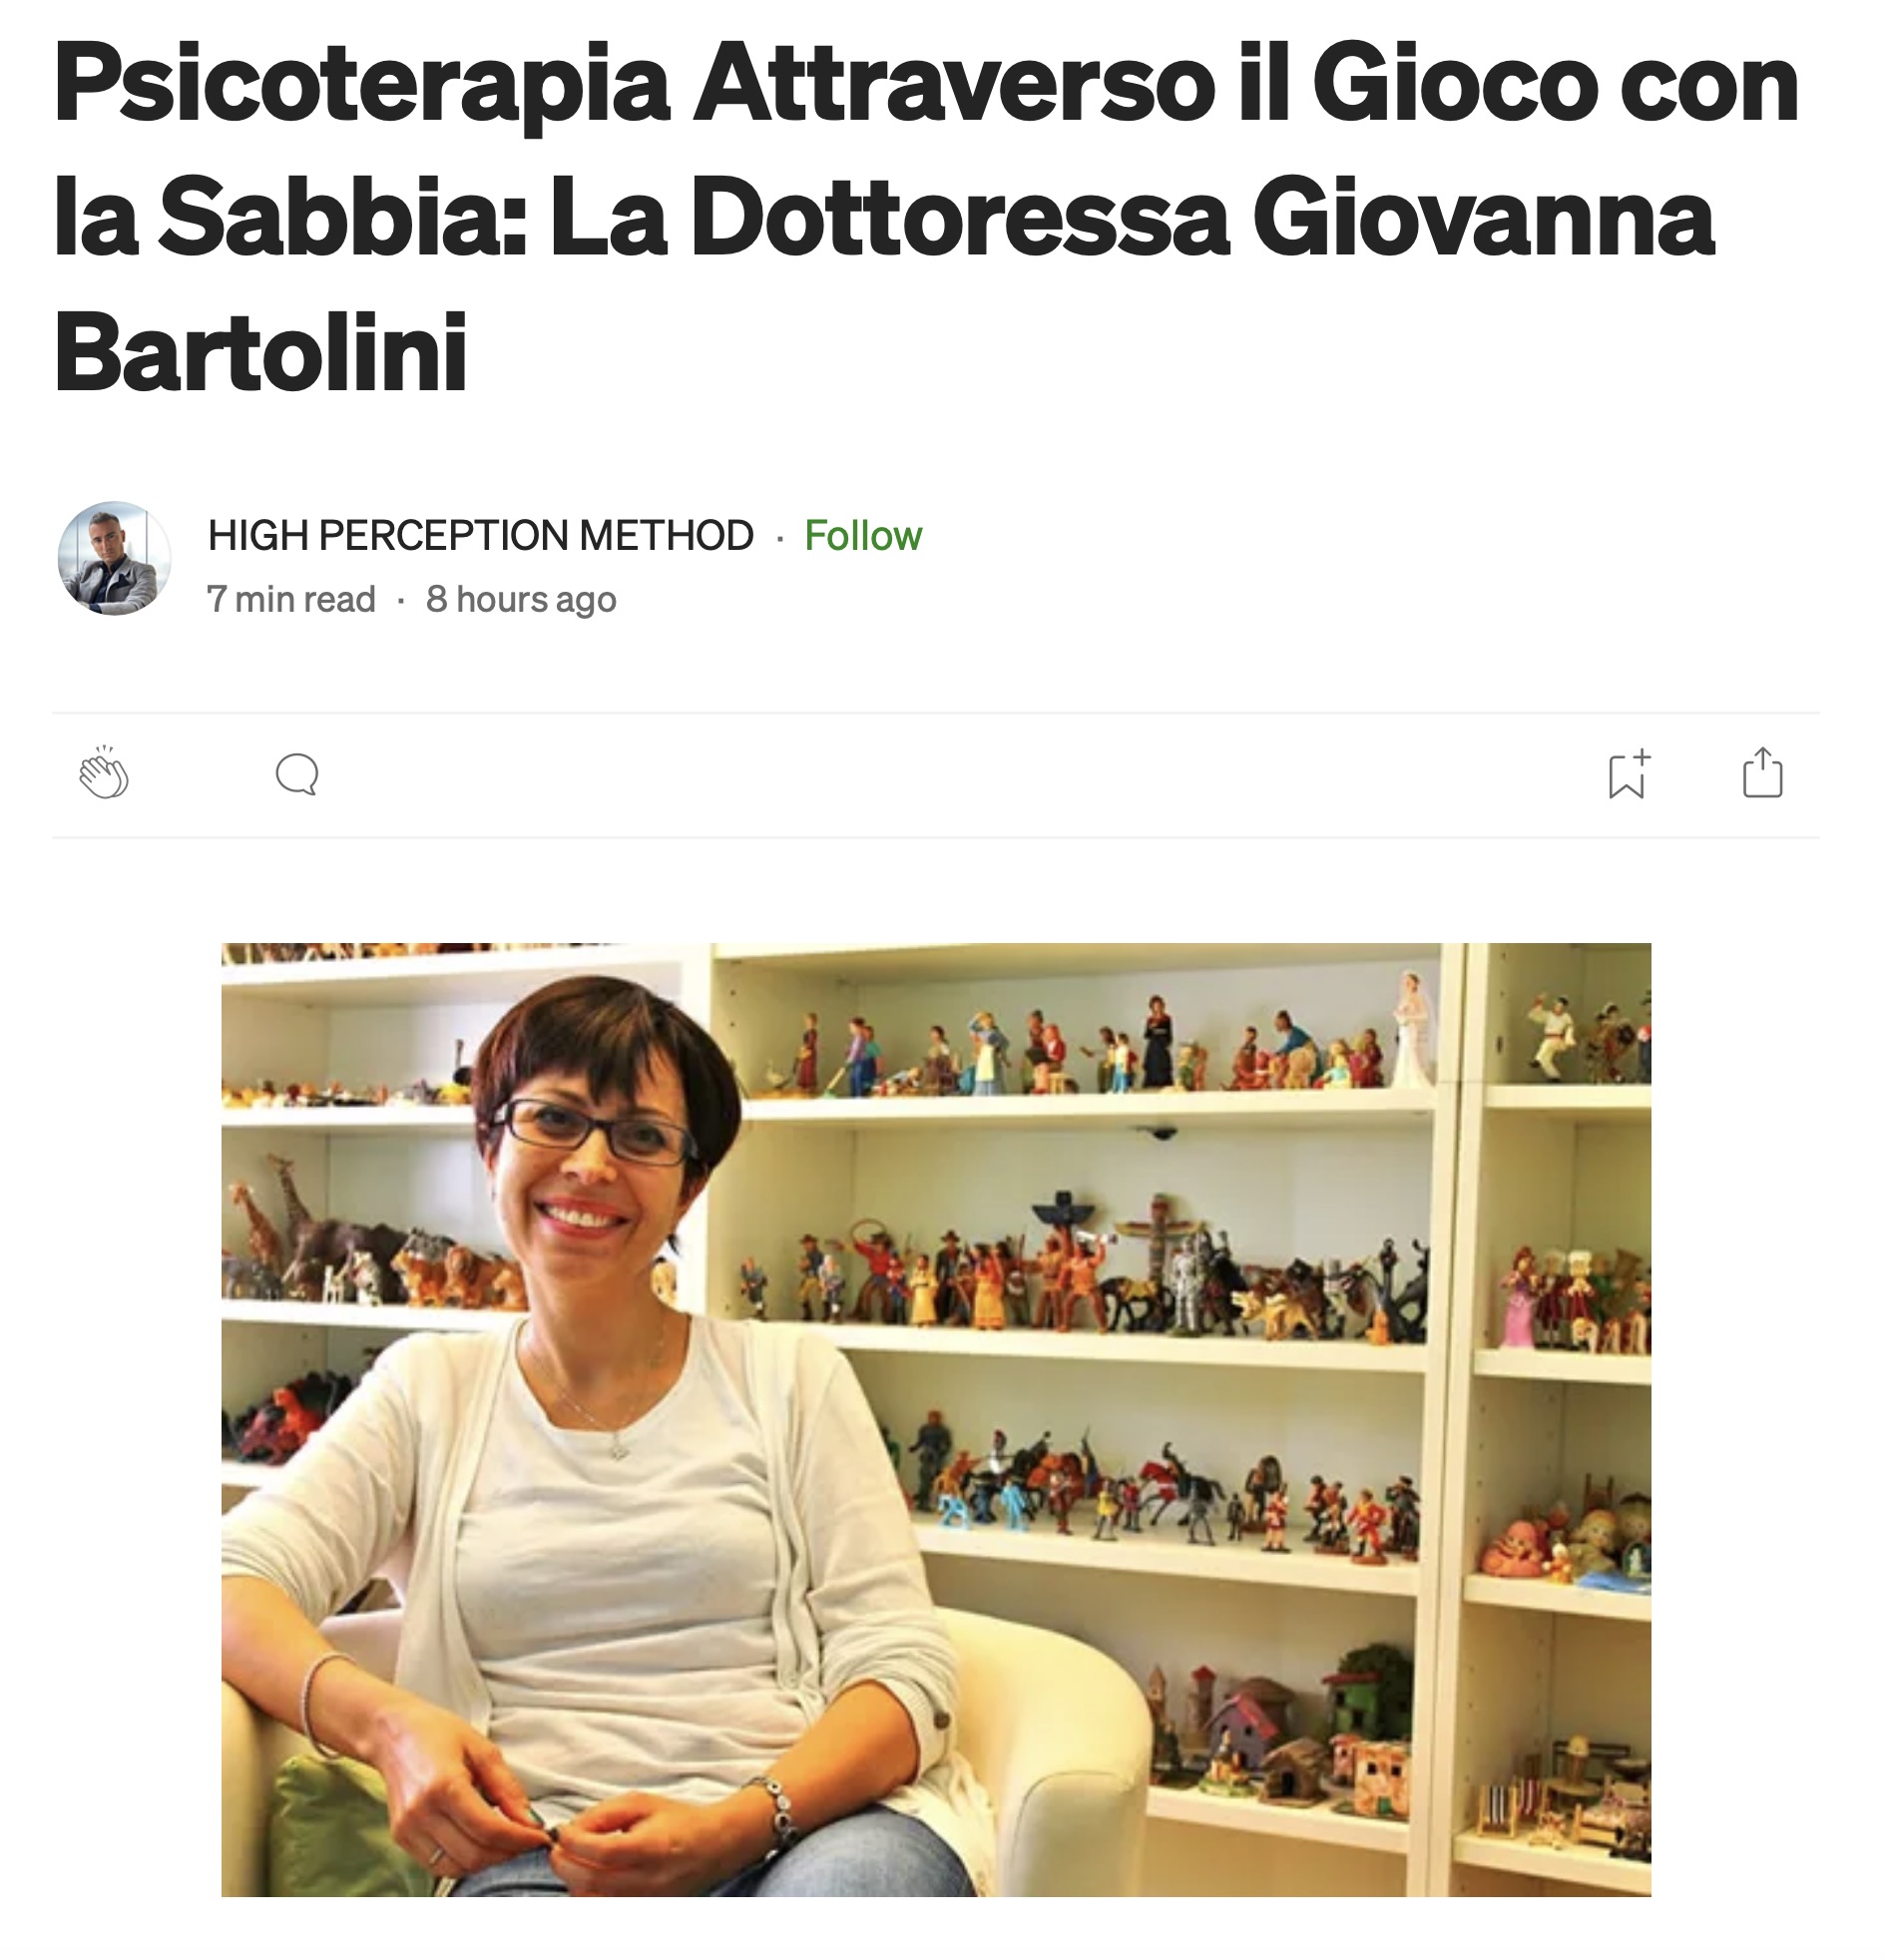 Psicoterapia Attraverso il Gioco con la Sabbia: La Dottoressa Giovanna Bartolini